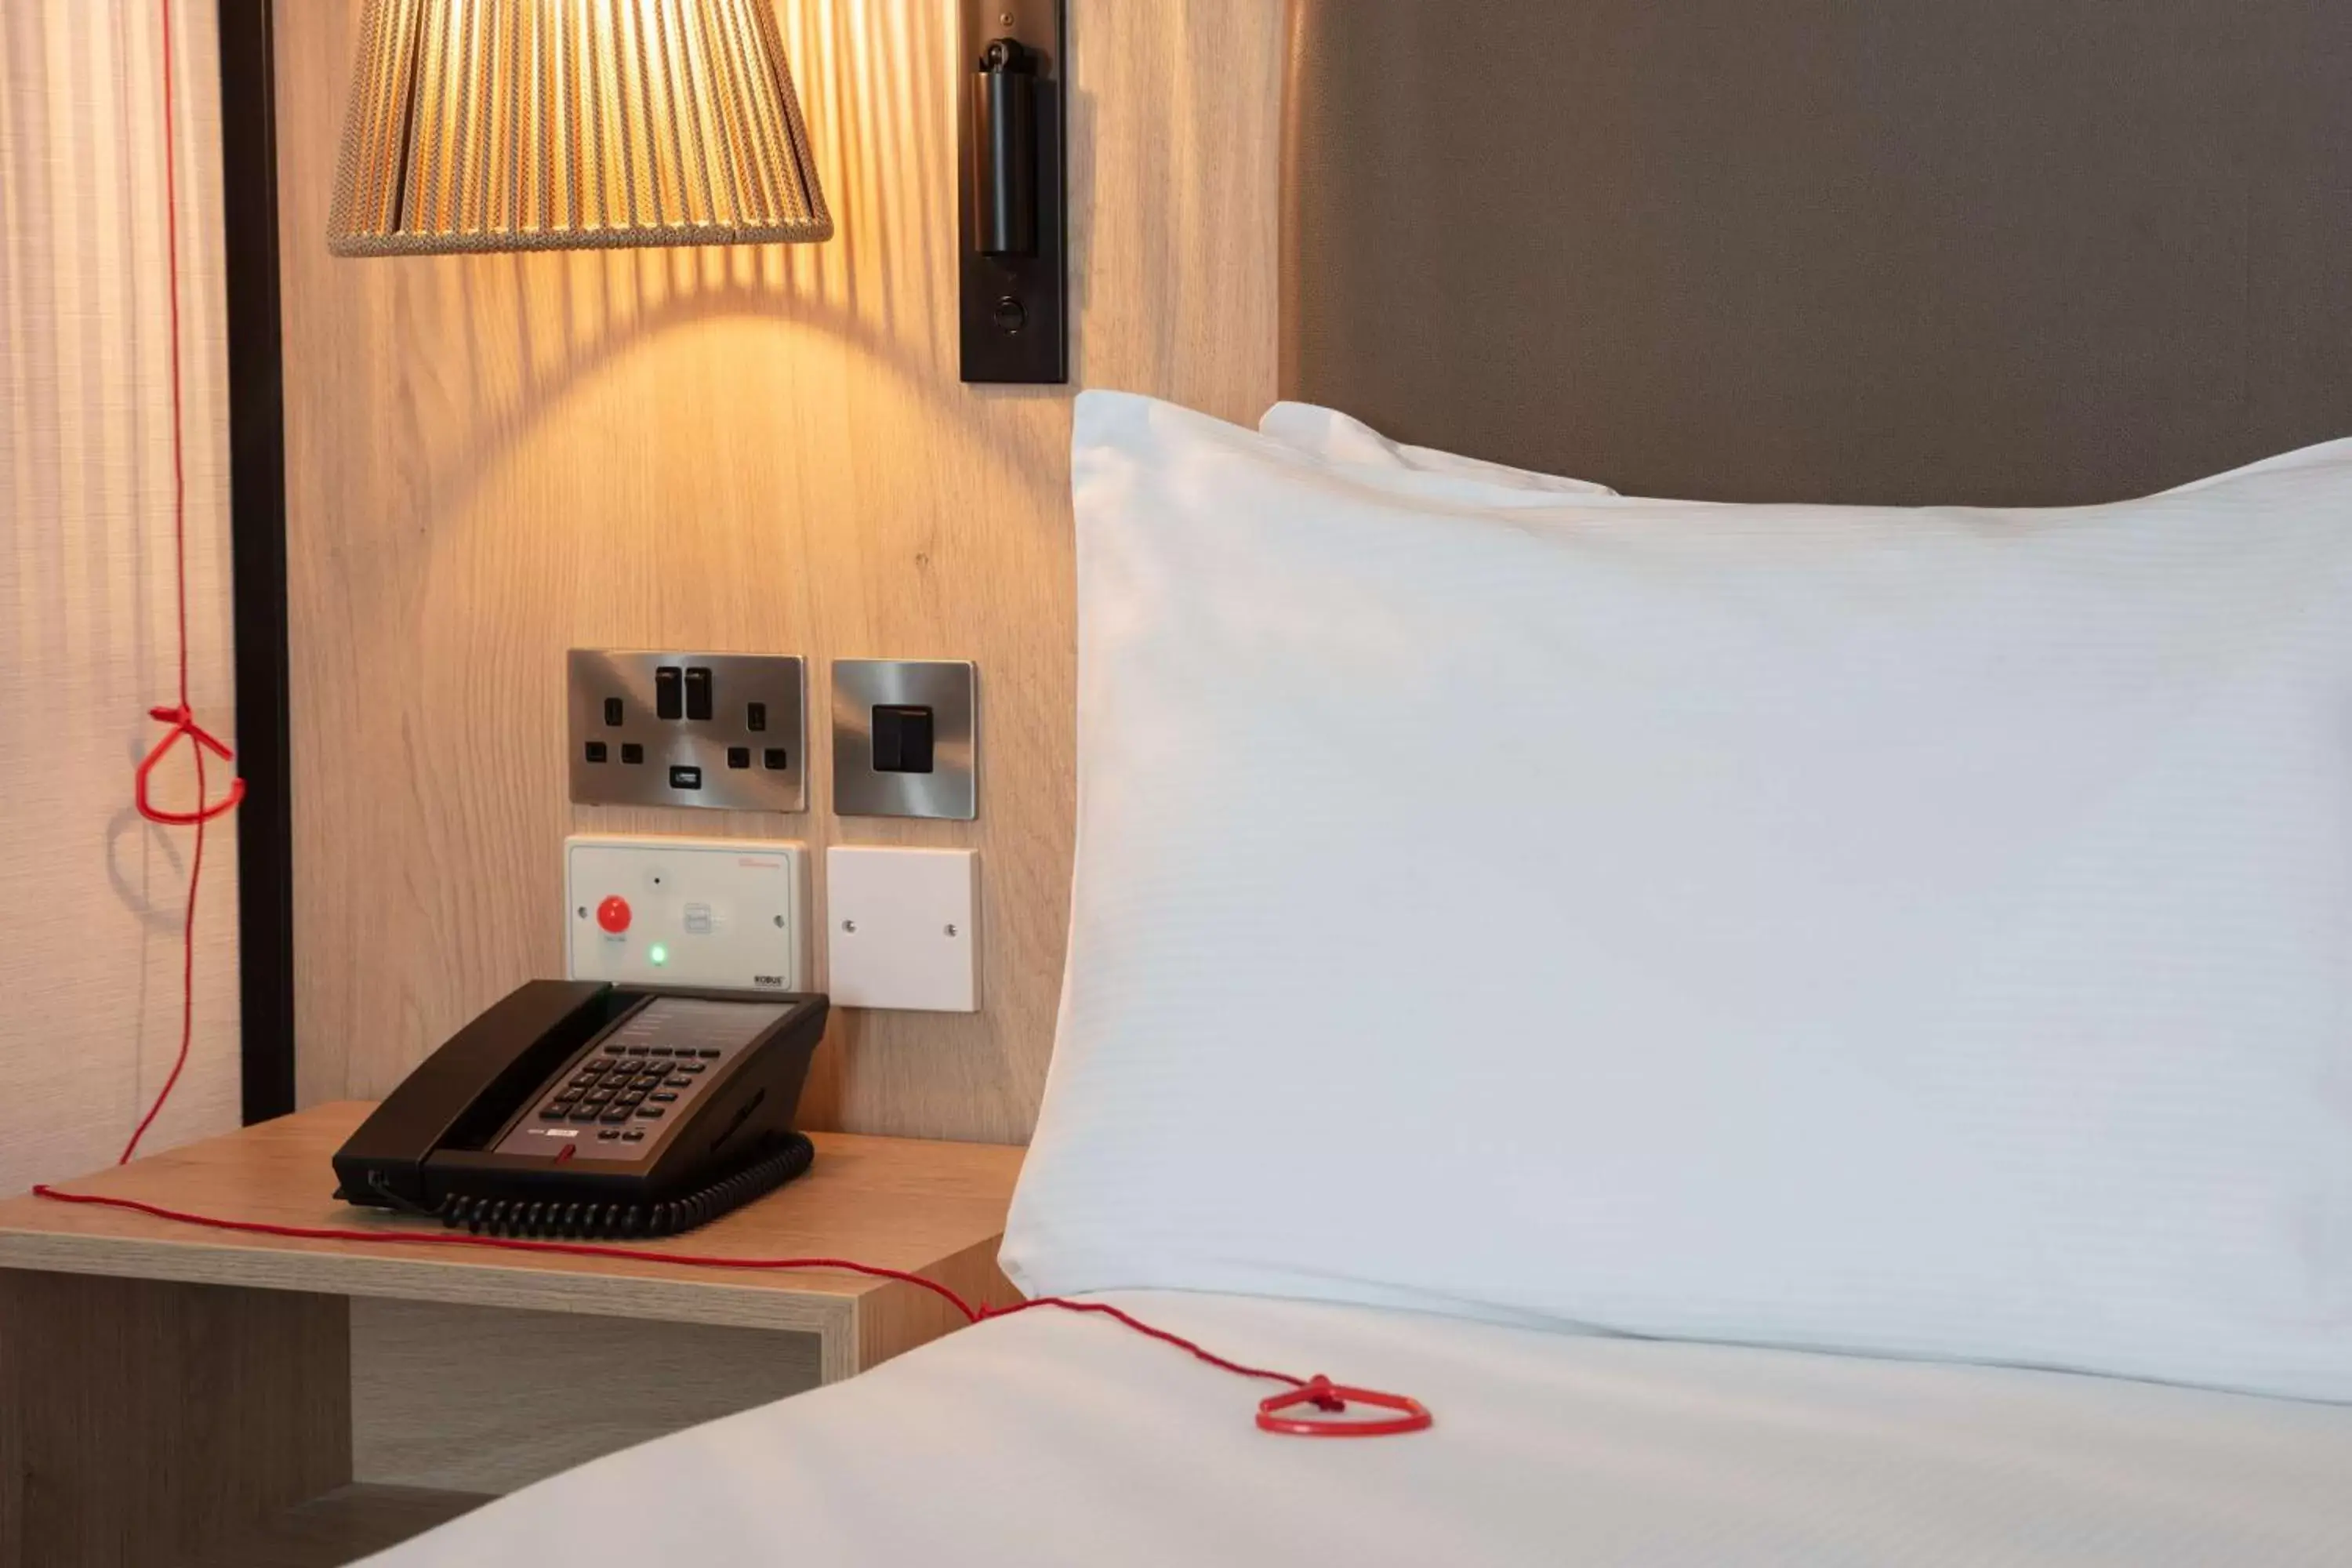 Bed in DoubleTree by Hilton London Elstree